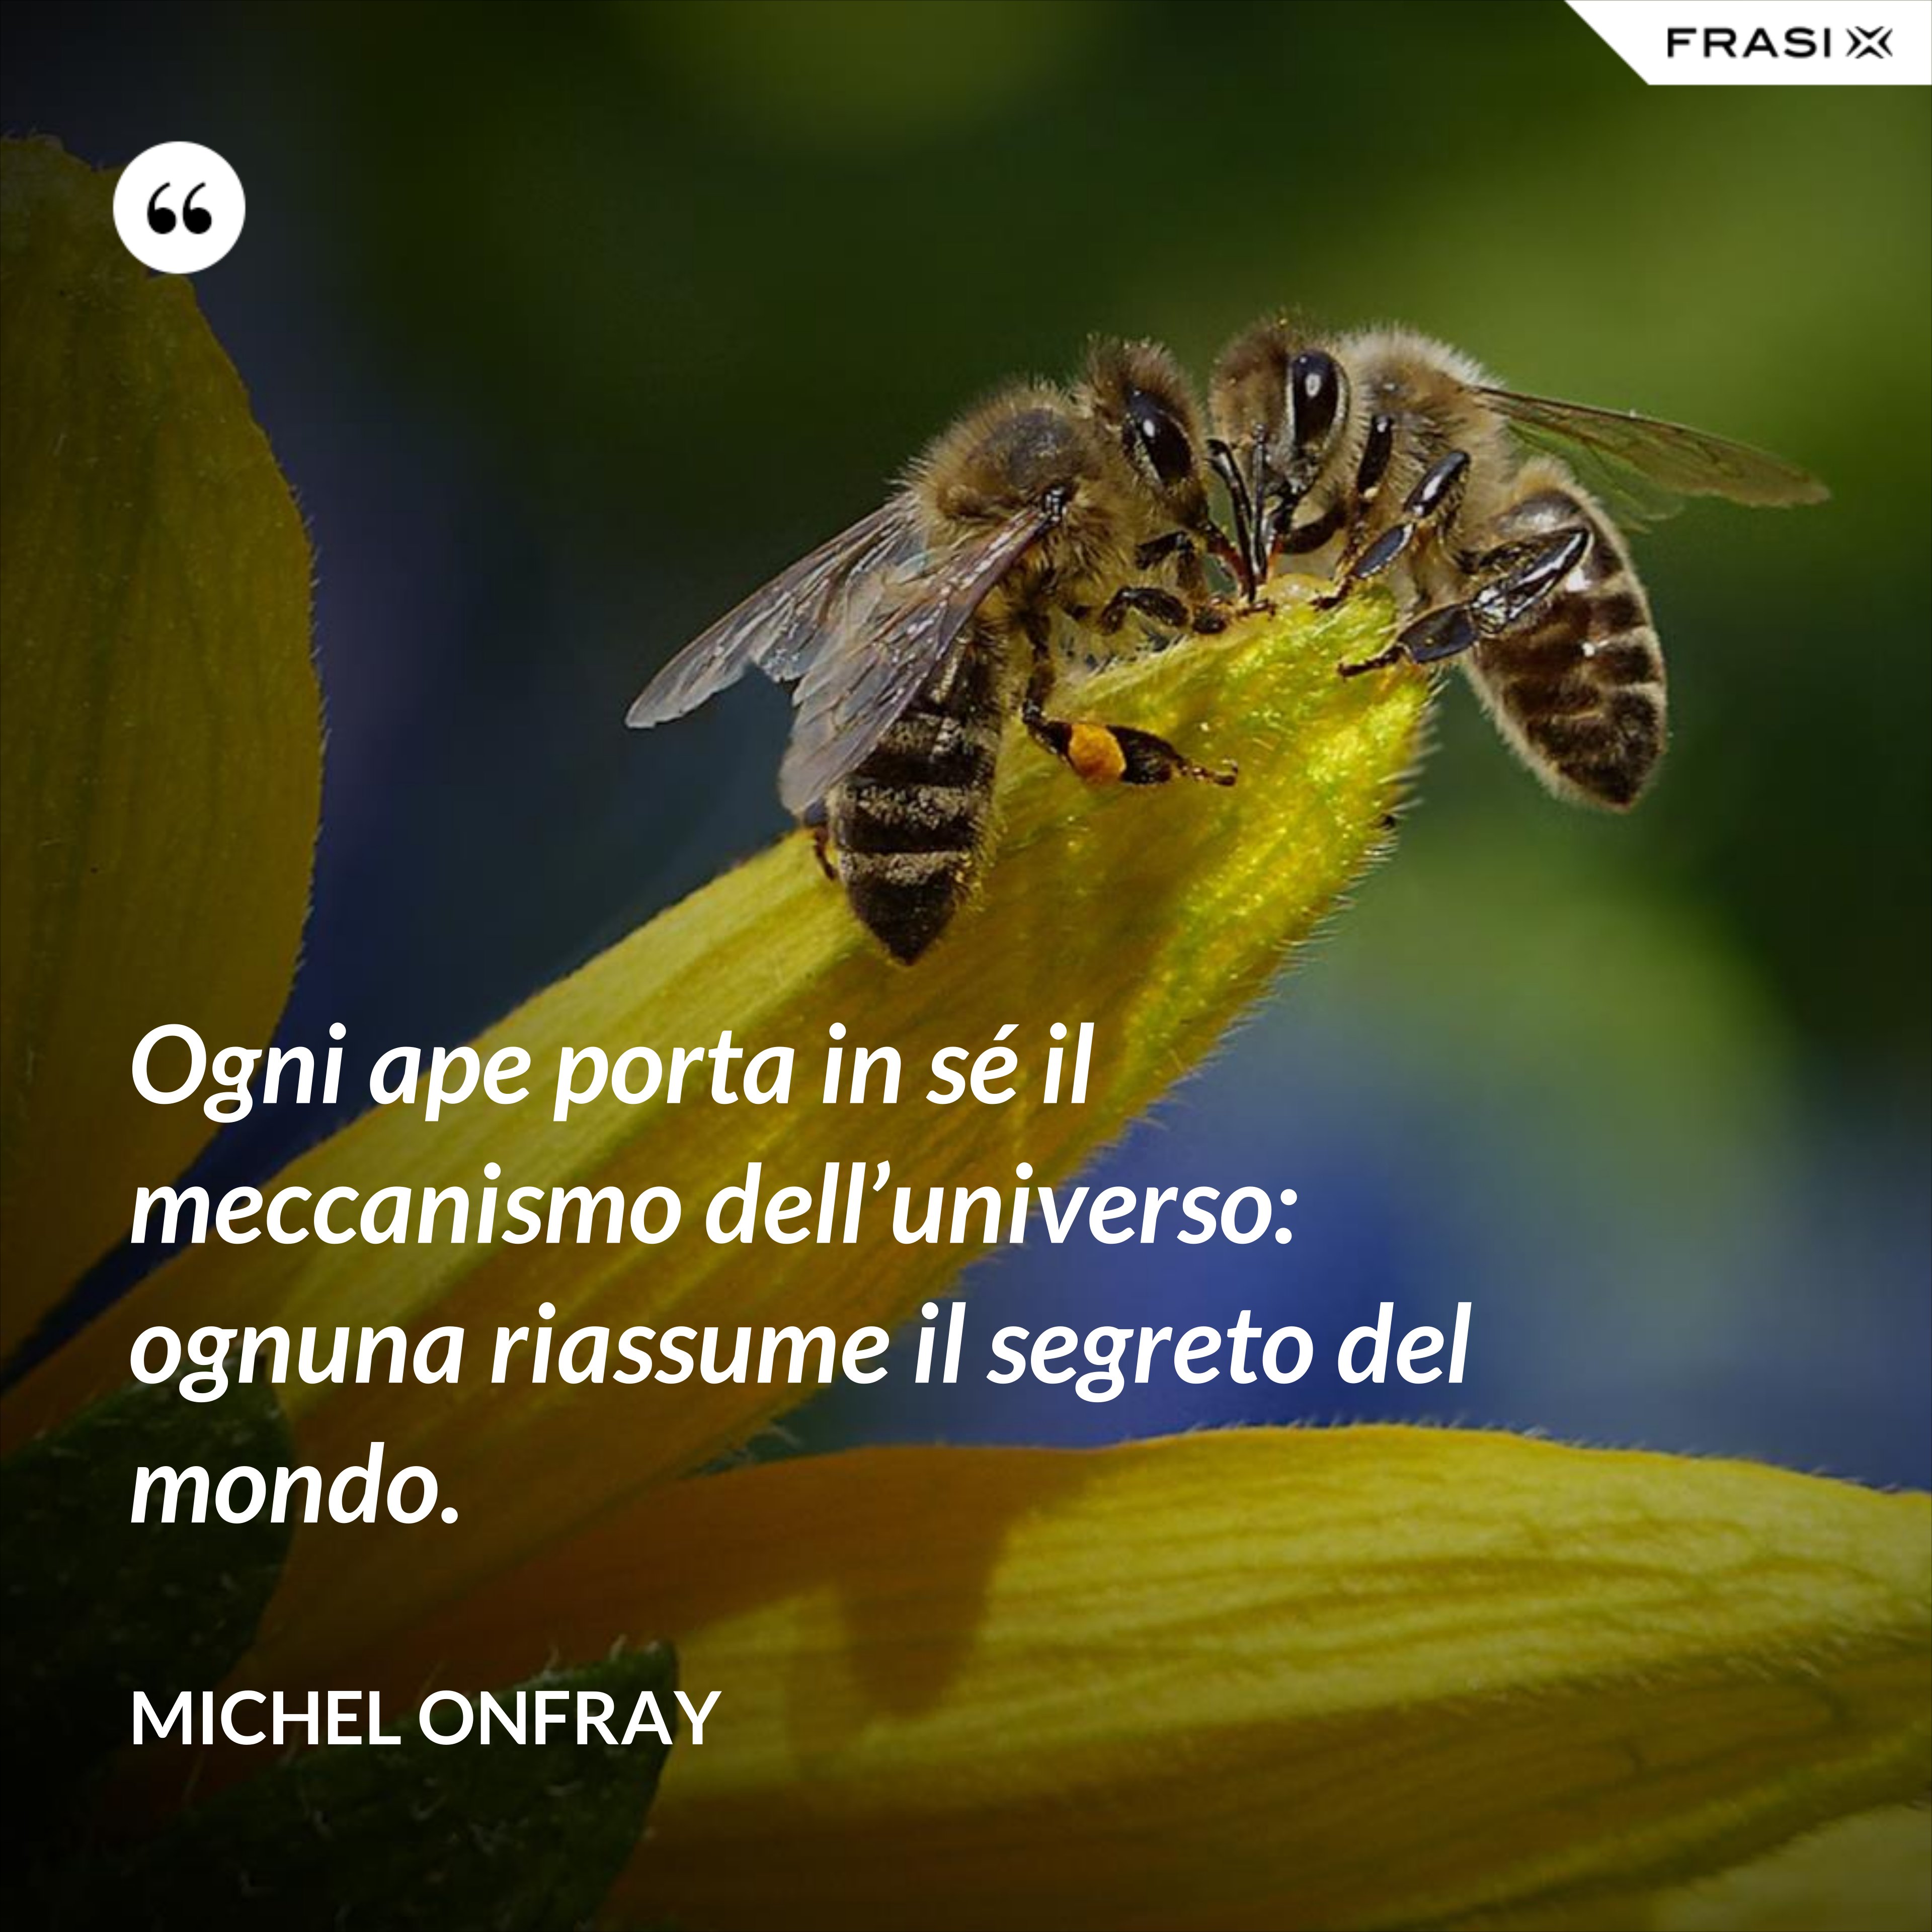 Ogni ape porta in sé il meccanismo dell’universo: ognuna riassume il segreto del mondo. - Michel Onfray